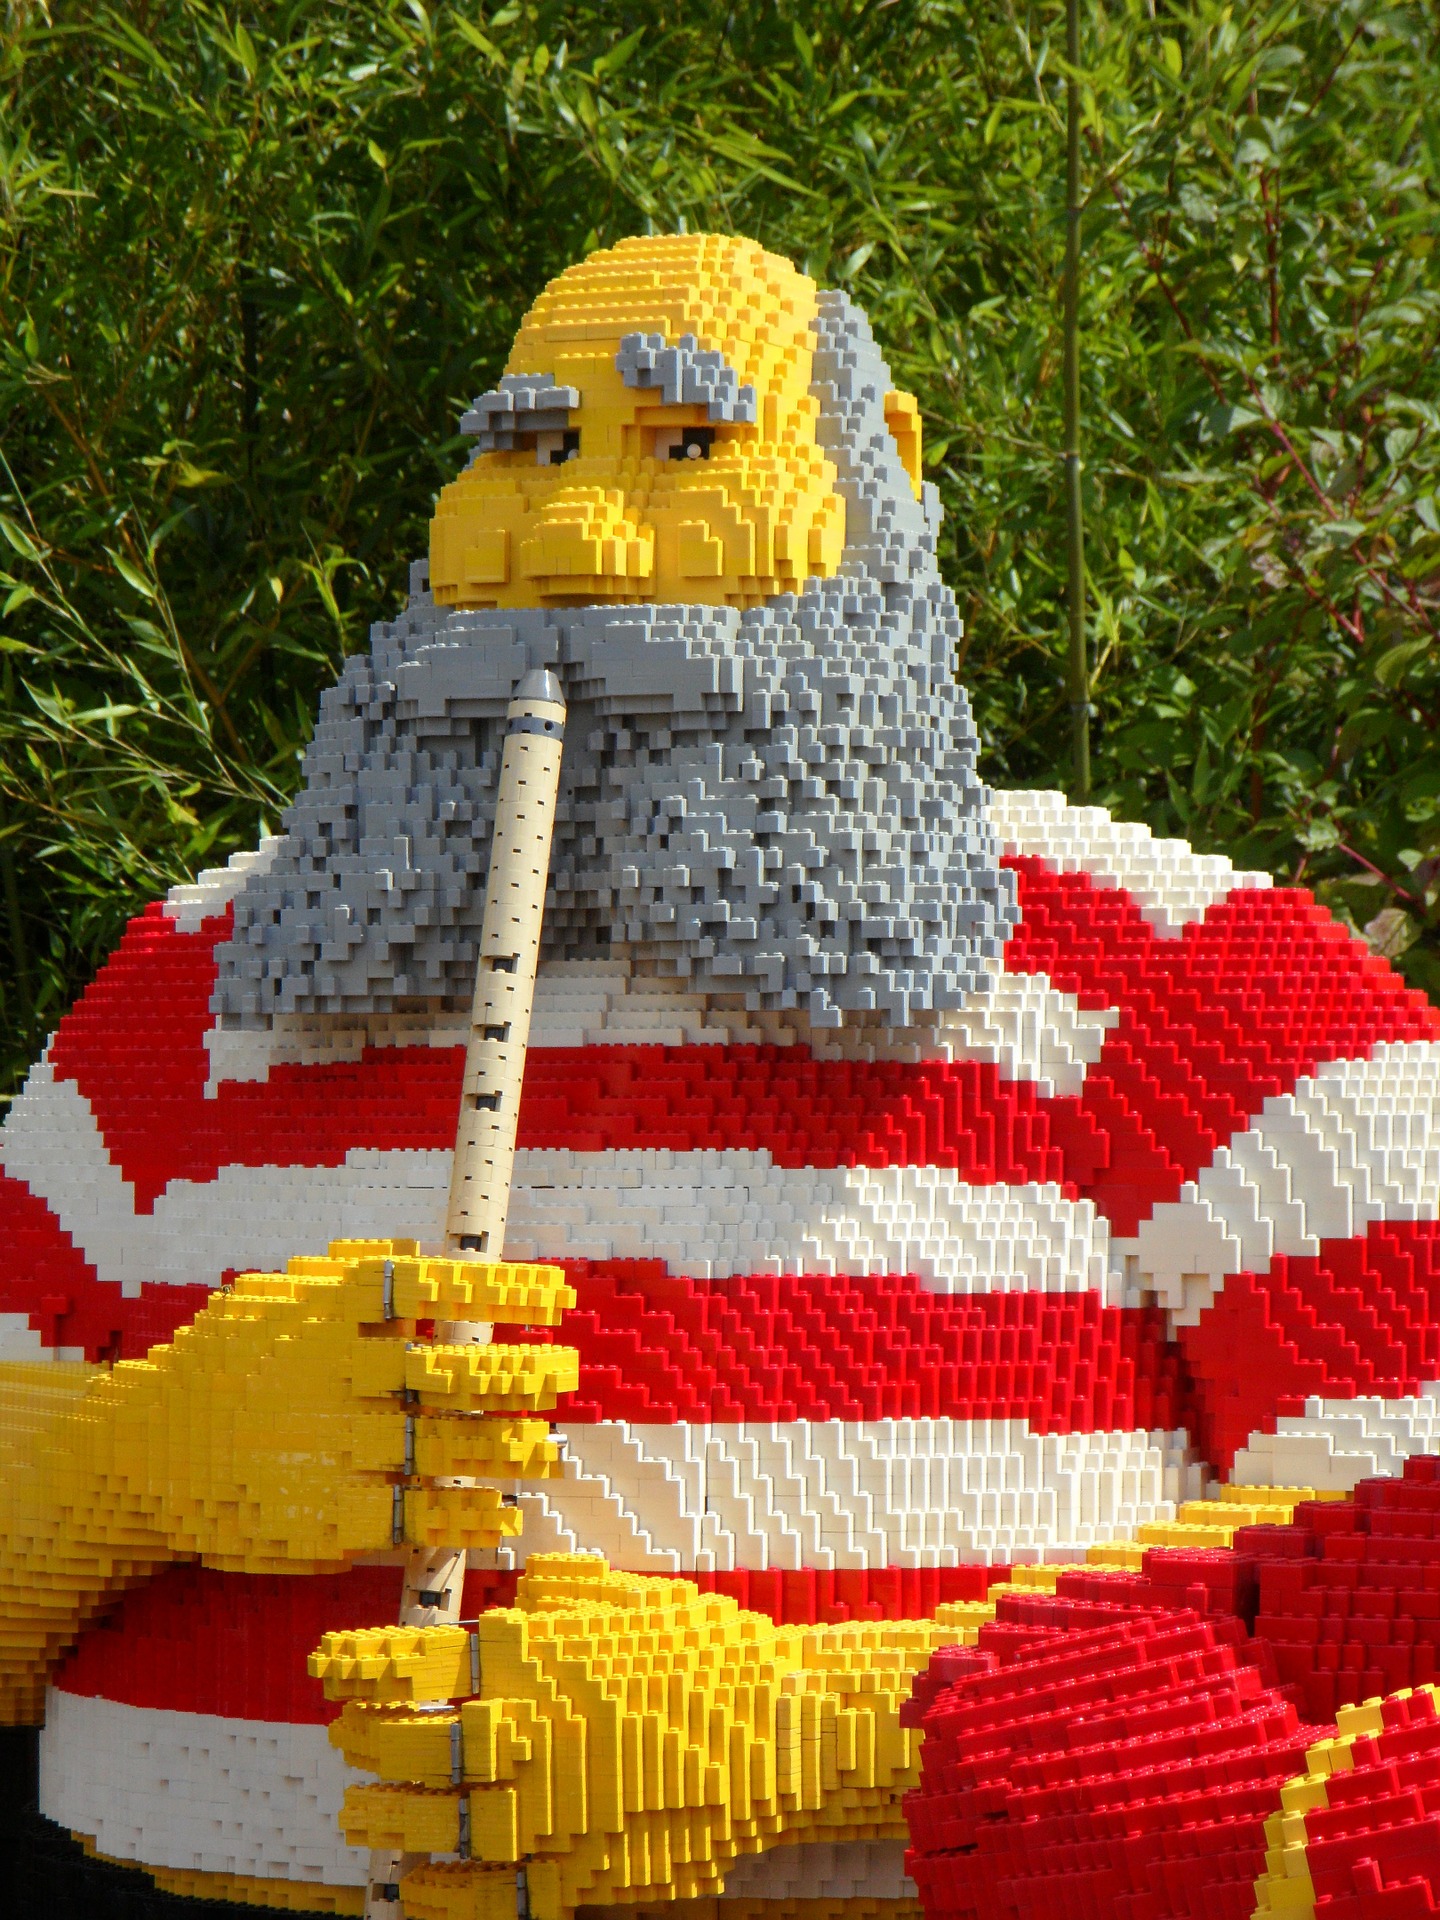 Der Europ?ische Gerichtshof (EuGH) entscheidet zum zweiten Mal ?ber den Schutz von LEGO-Bausteinen ? diesmal zu Gunsten der Firma LEGO.